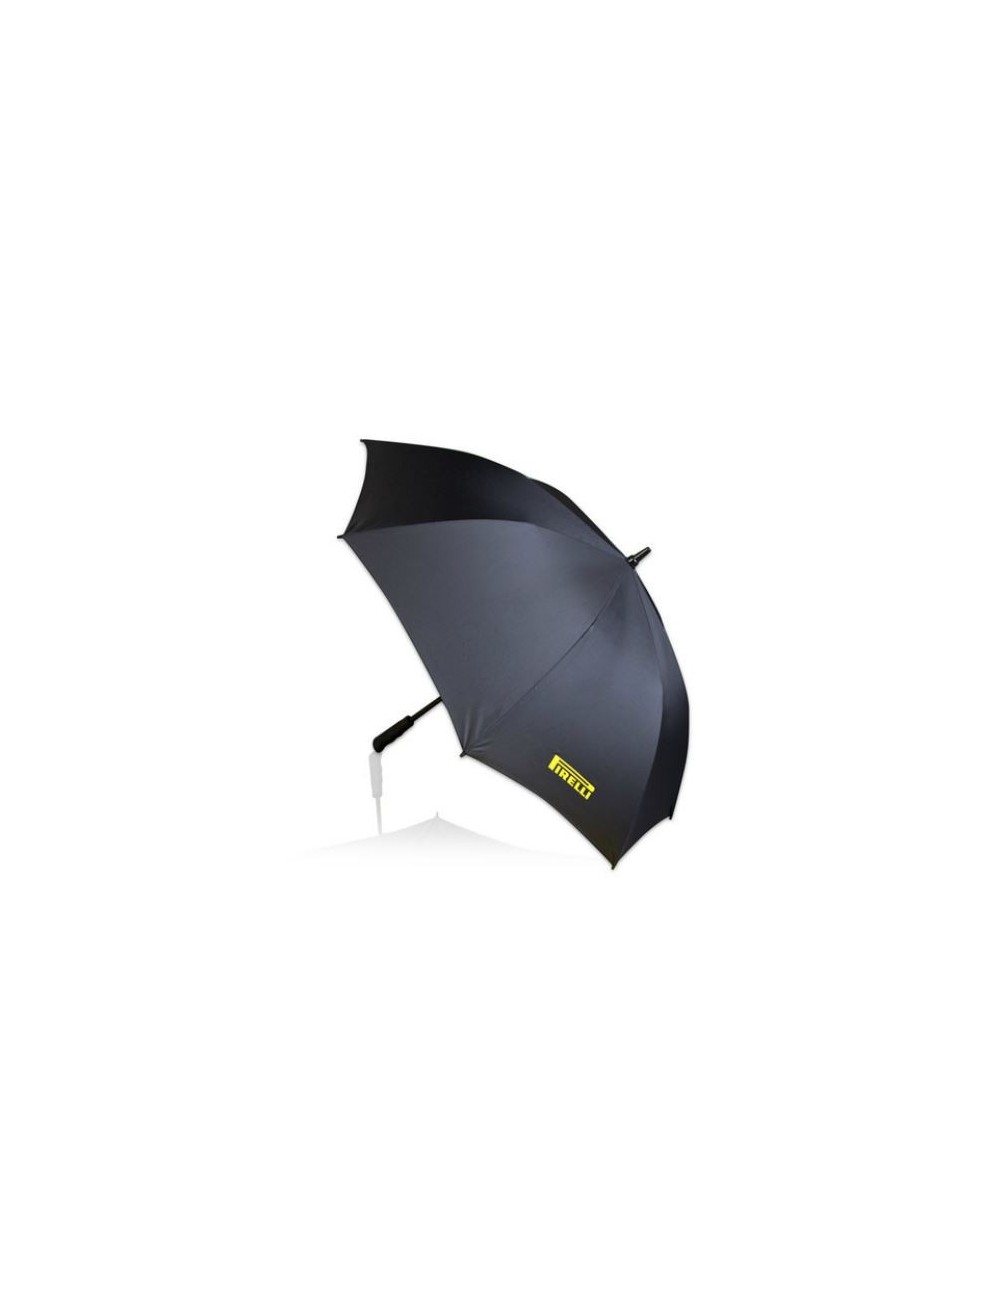 Parapluie Pirelli